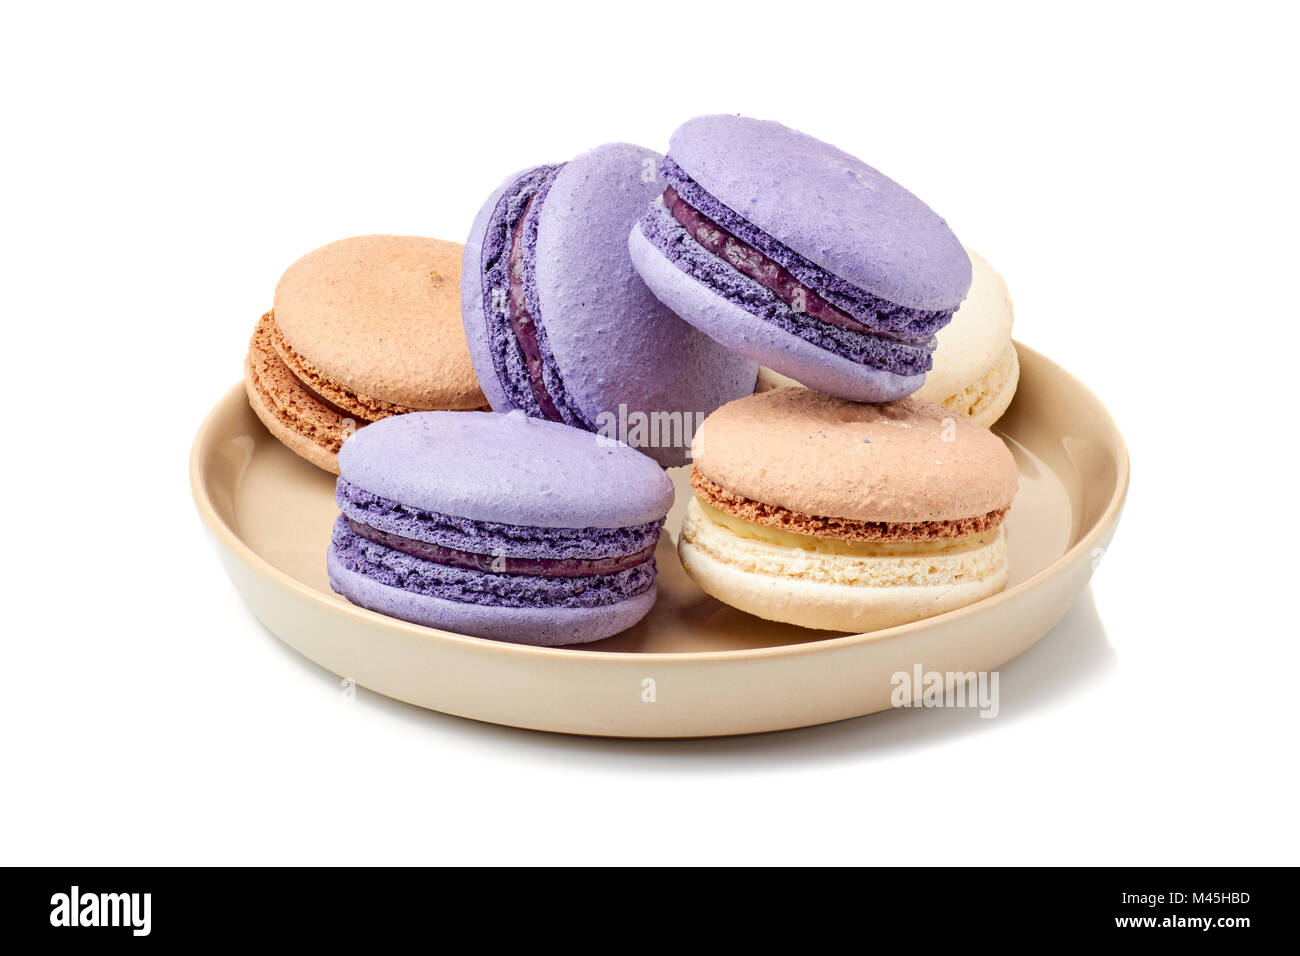 Vith placa violeta y macarons beige sobre blanco Foto de stock